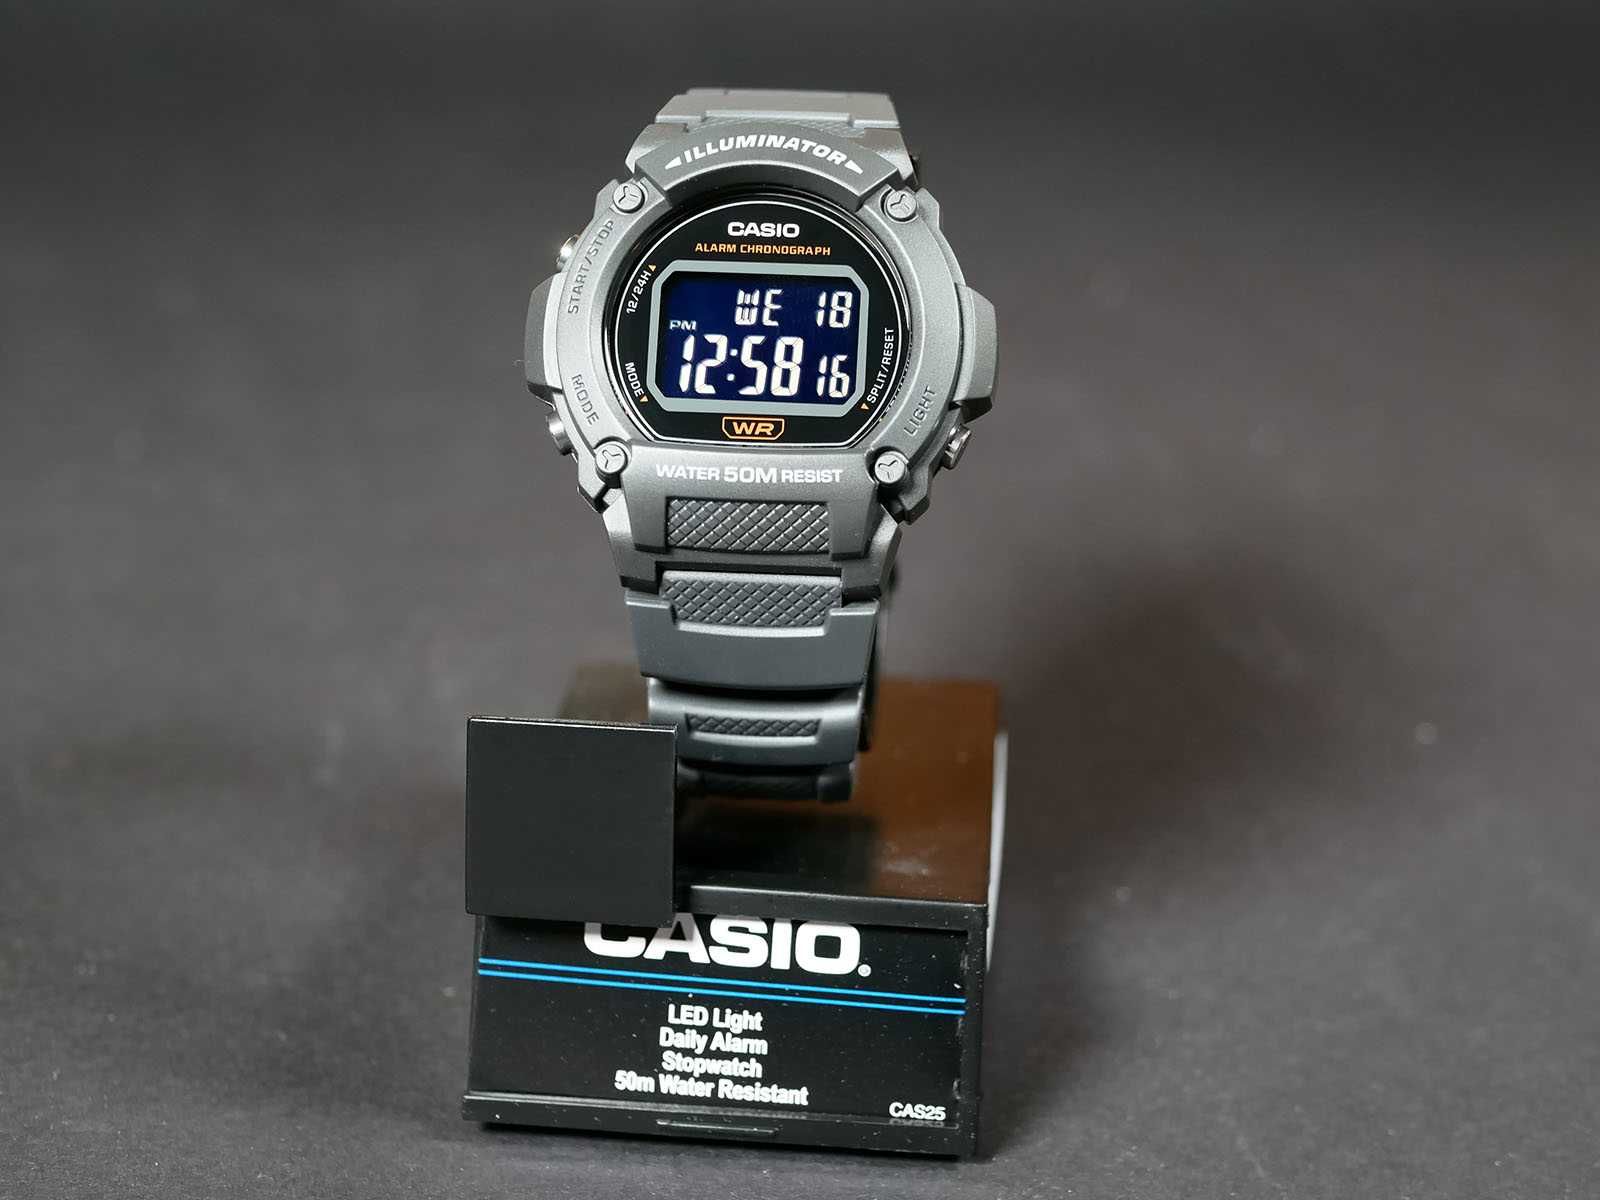 Годинник Casio W-219H-8BV. 7 років батарейка.